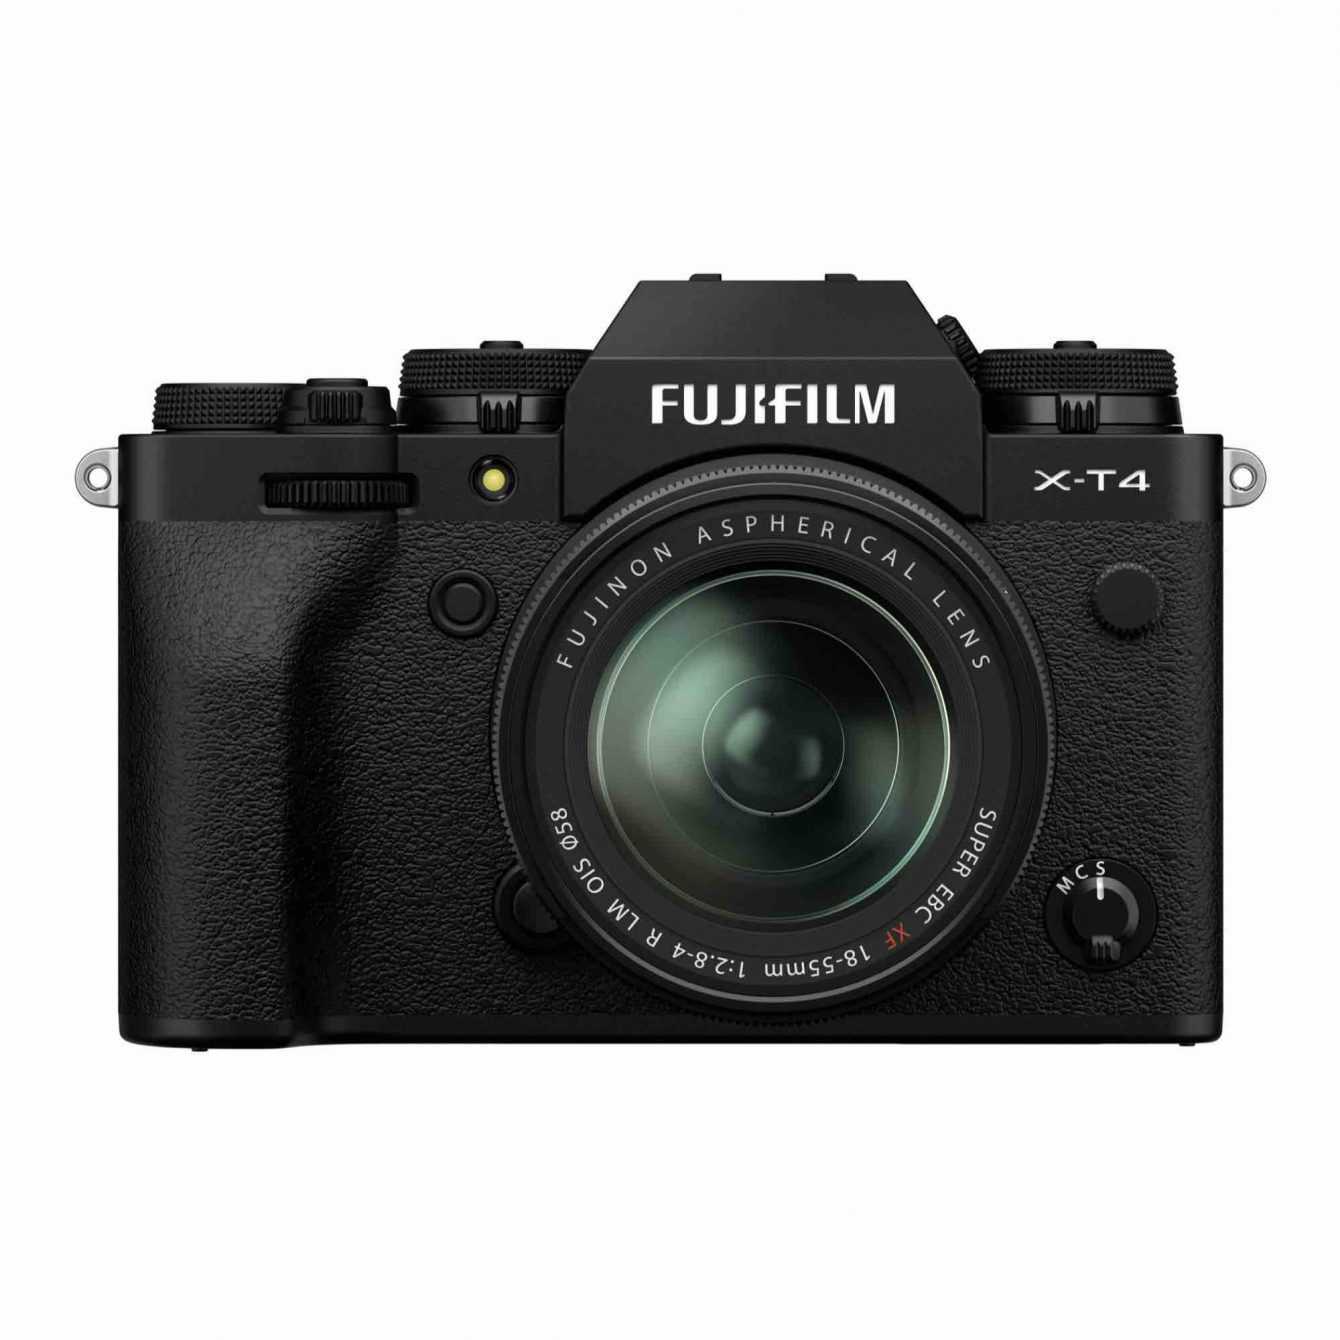 Fujifilm X-T4: specifiche complete e immagini in anteprima